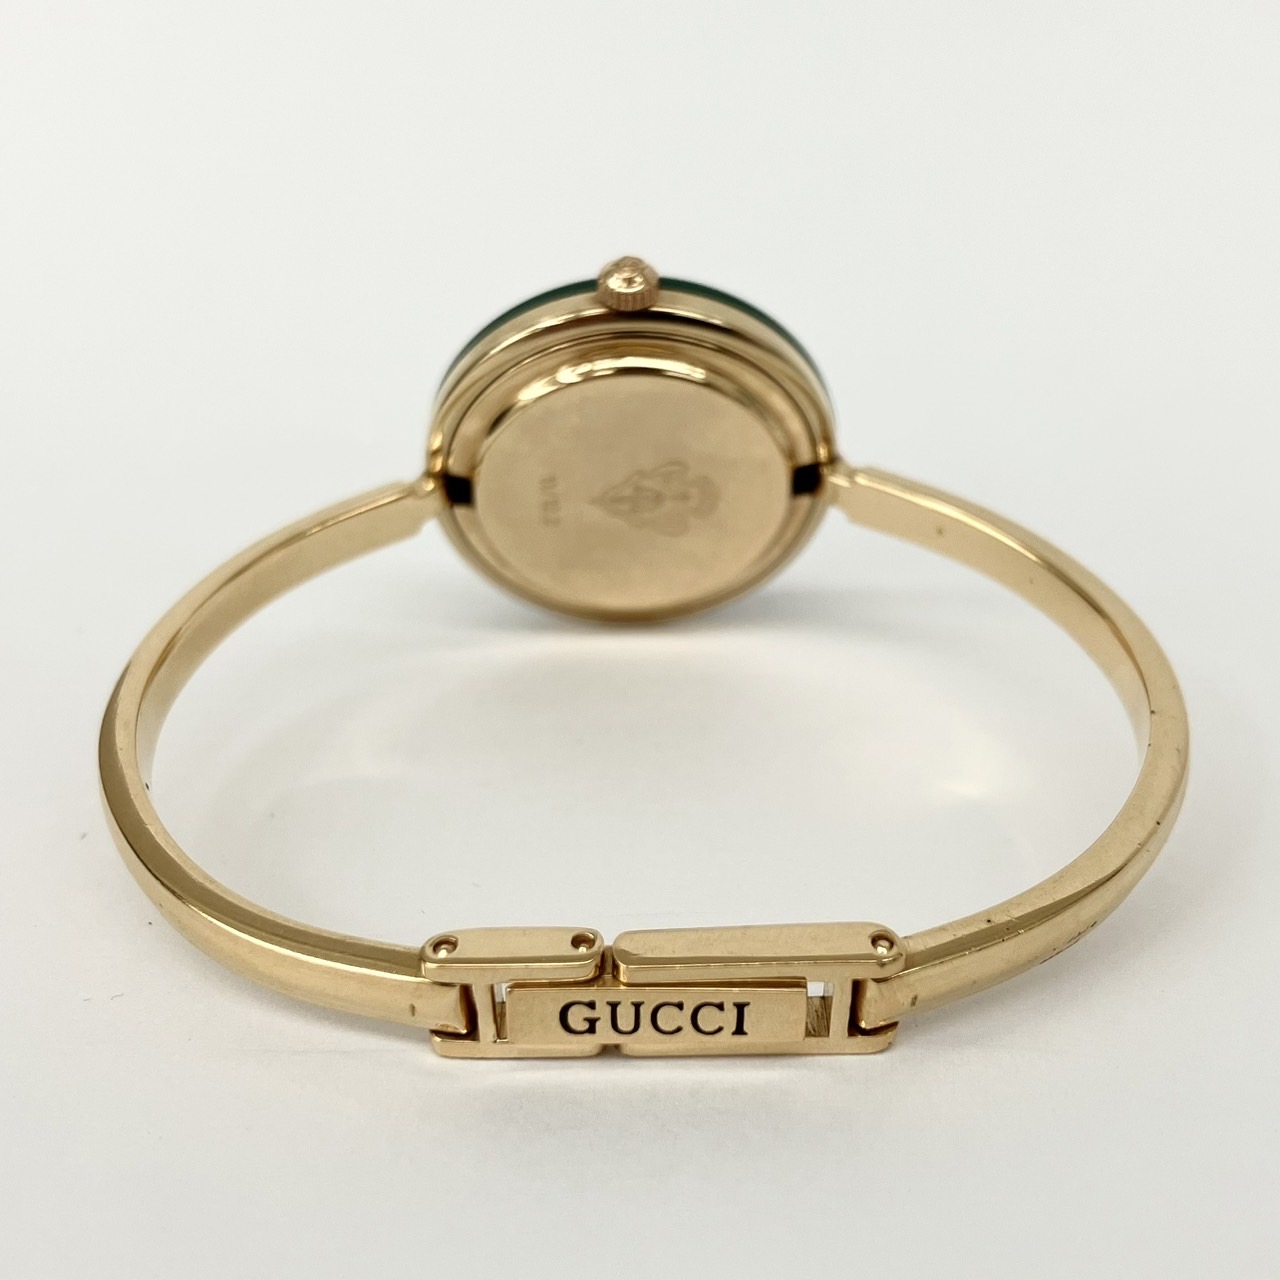 GUCCI【グッチ】12色チェンジベゼル 腕時計の買取価格と査定のポイント